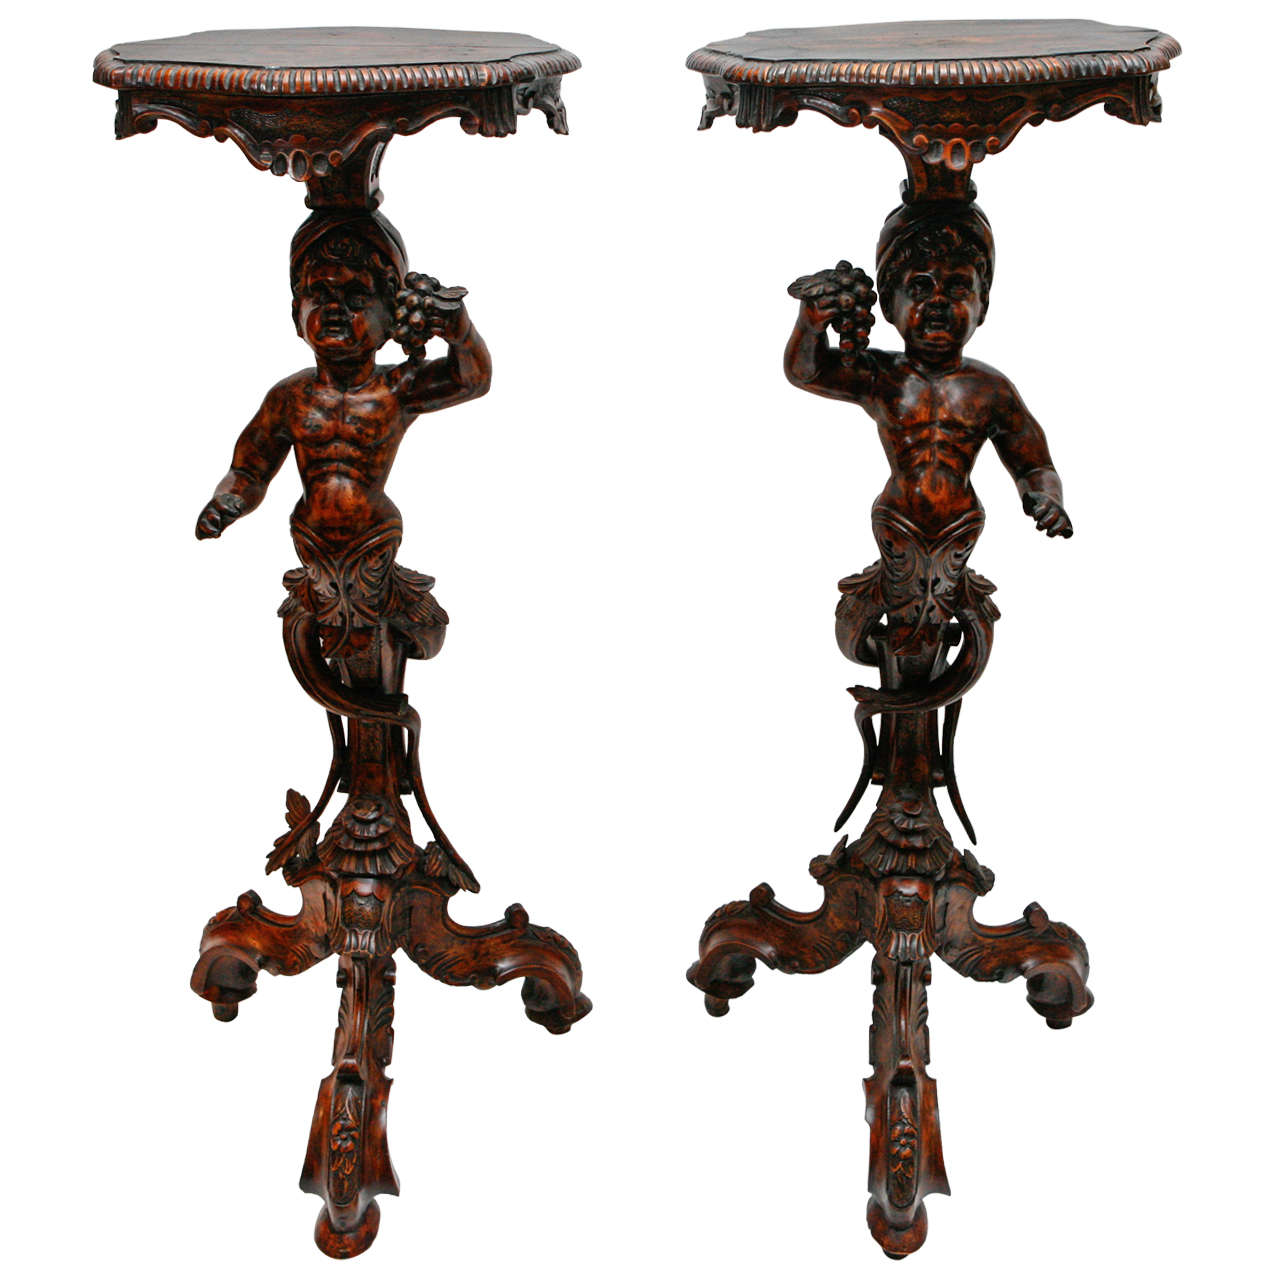 Pair of 19th Century Italian Moor Pedestals